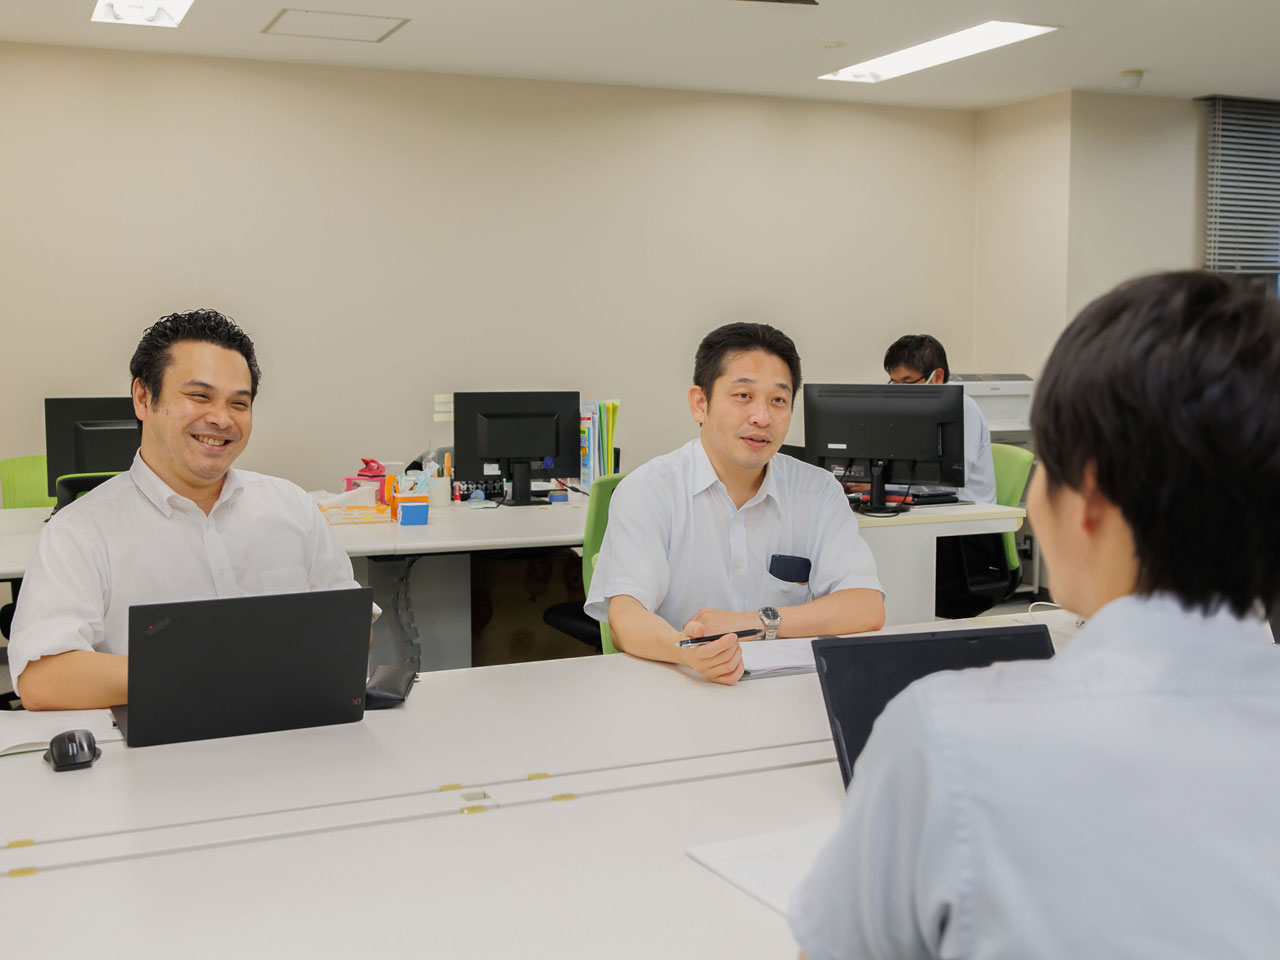 2007年の設立以来、一貫して黒字経営を続け、現在は東京、京都の2拠点体制、従業員数約20名。国内を代表する大手企業30社以上と直接取引をしている。